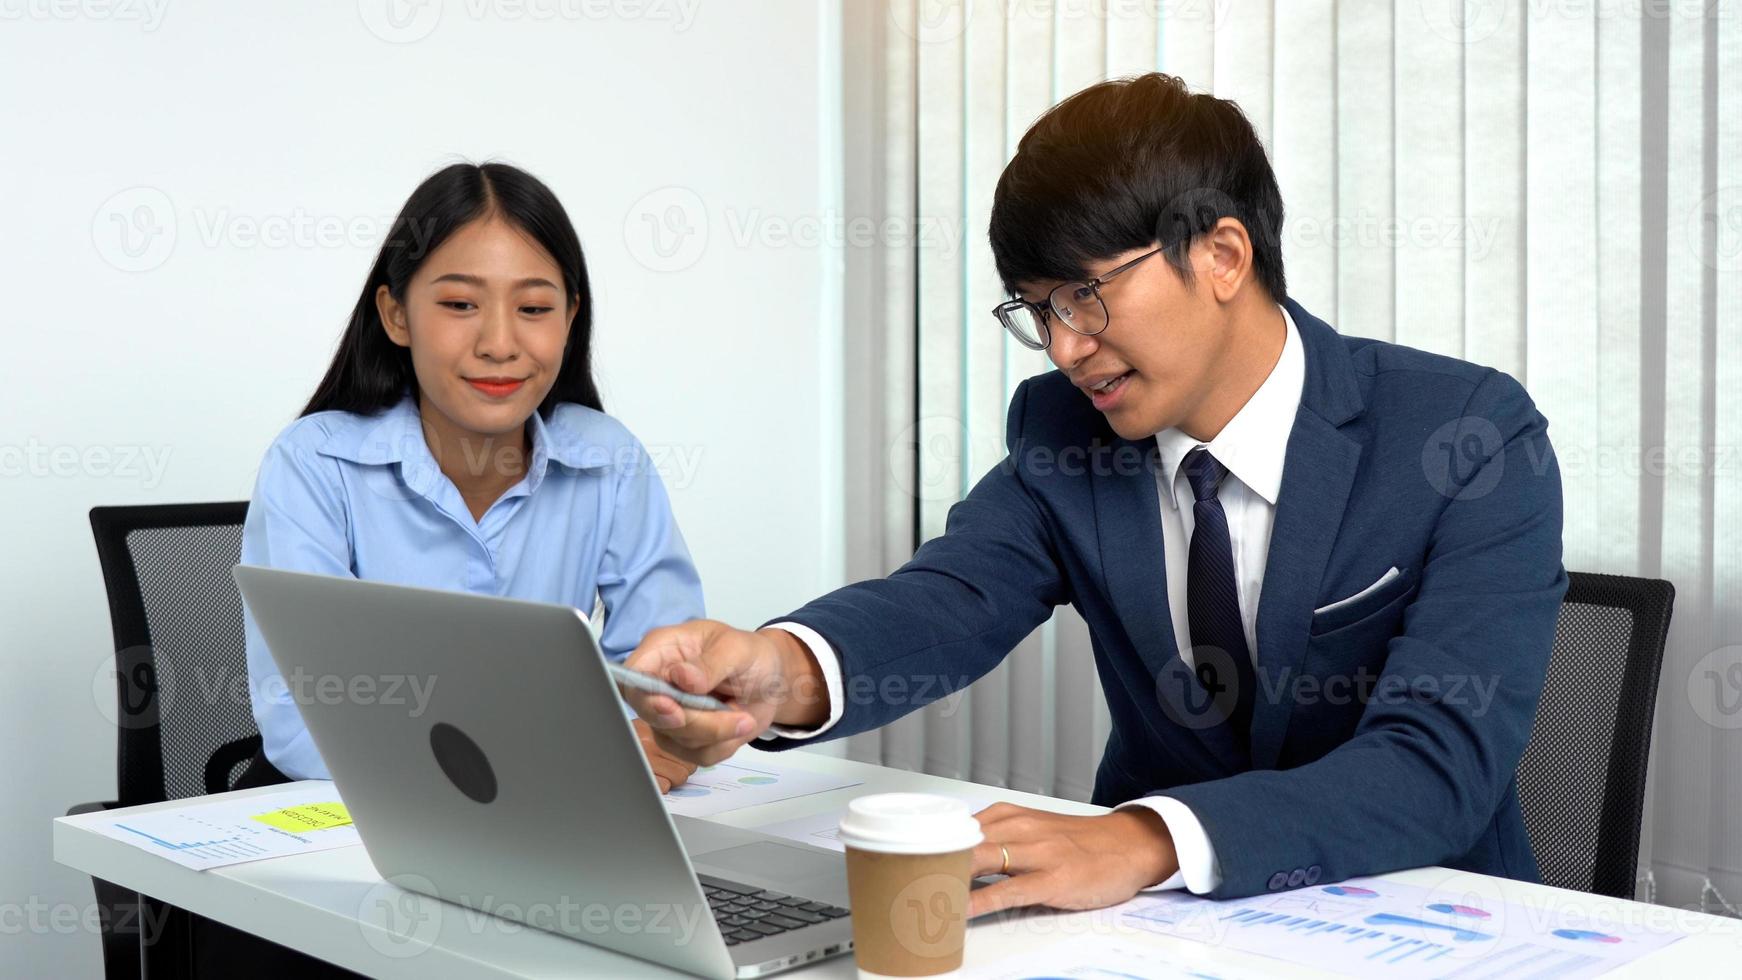 gerente masculino asiático ensina a equipe sobre contabilidade em suas mesas. foto